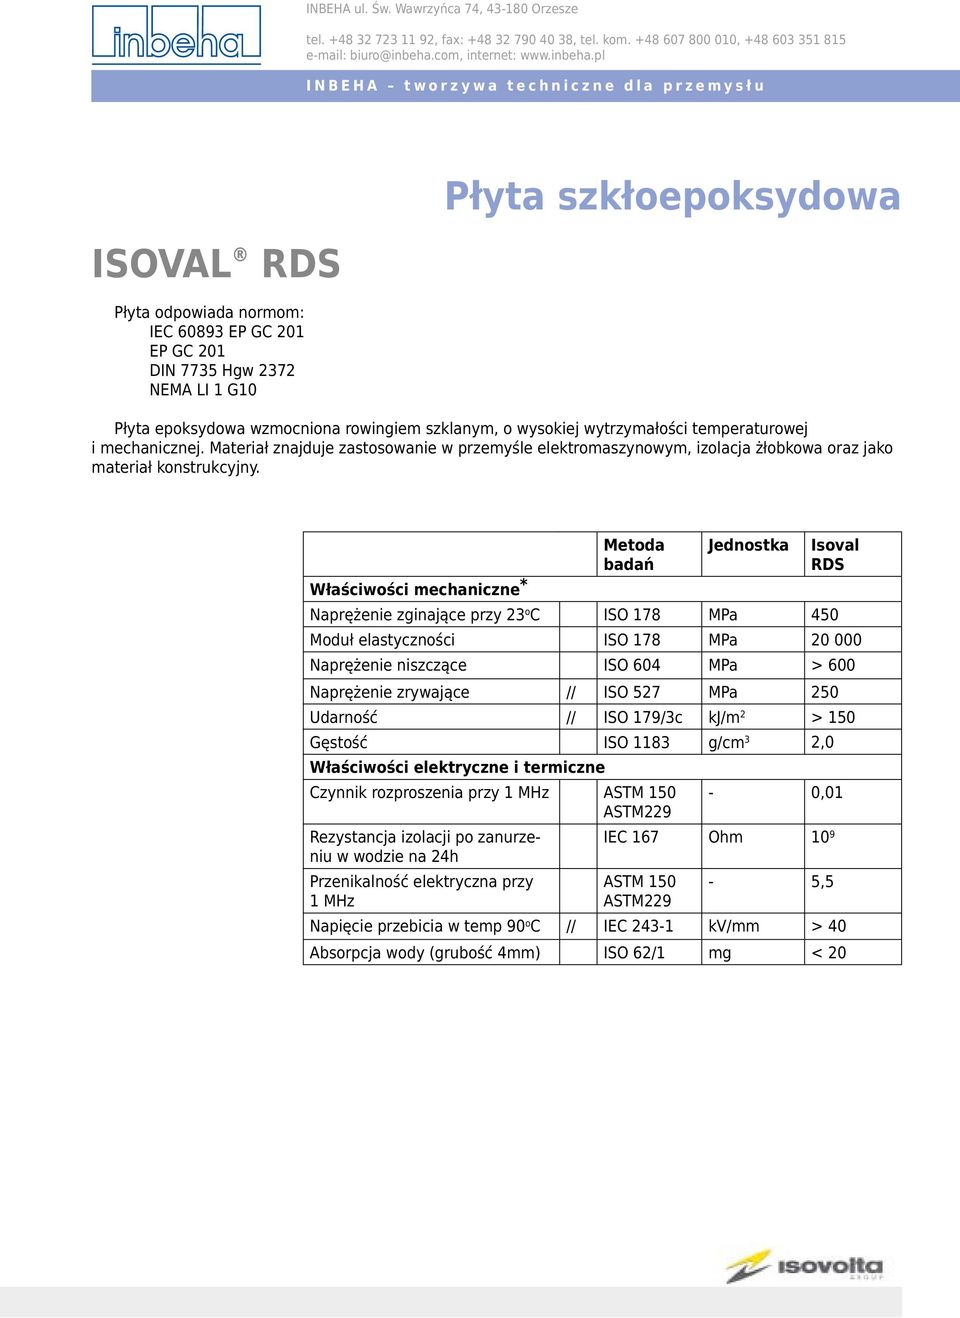 Metoda Jednostka Isoval RDS Naprężenie zginające przy 23 o C ISO 178 MPa 450 Moduł elastyczności ISO 178 MPa 20 000 Naprężenie niszczące ISO 604 MPa > 600 Naprężenie zrywające // ISO 527 MPa 250